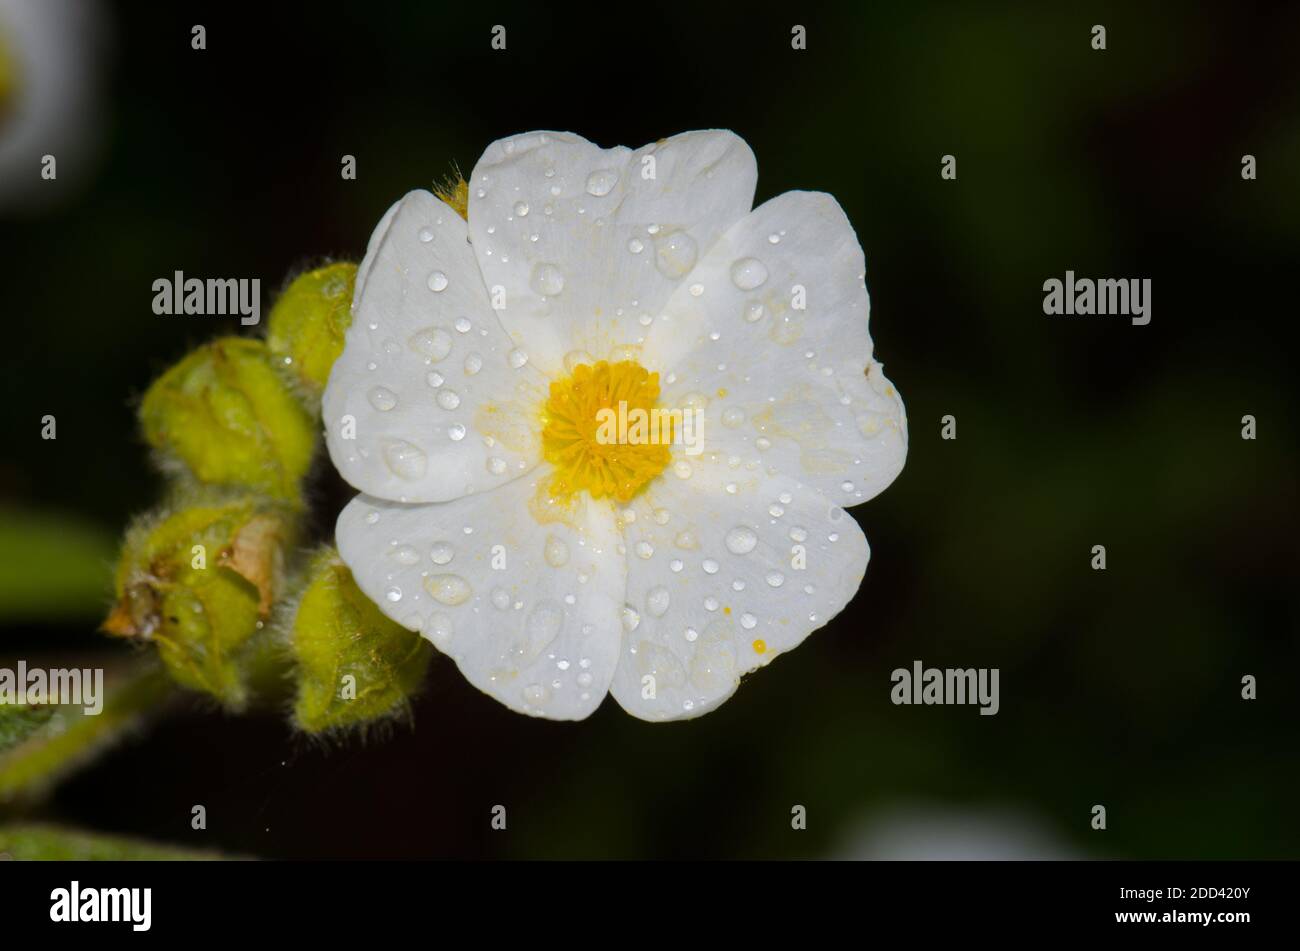 Blume von Montpellier cistus Cistus monspeliensis bedeckt mit Tau-Tropfen. Integral Natural Reserve von Inagua. Gran Canaria. Kanarische Inseln. Spanien. Stockfoto